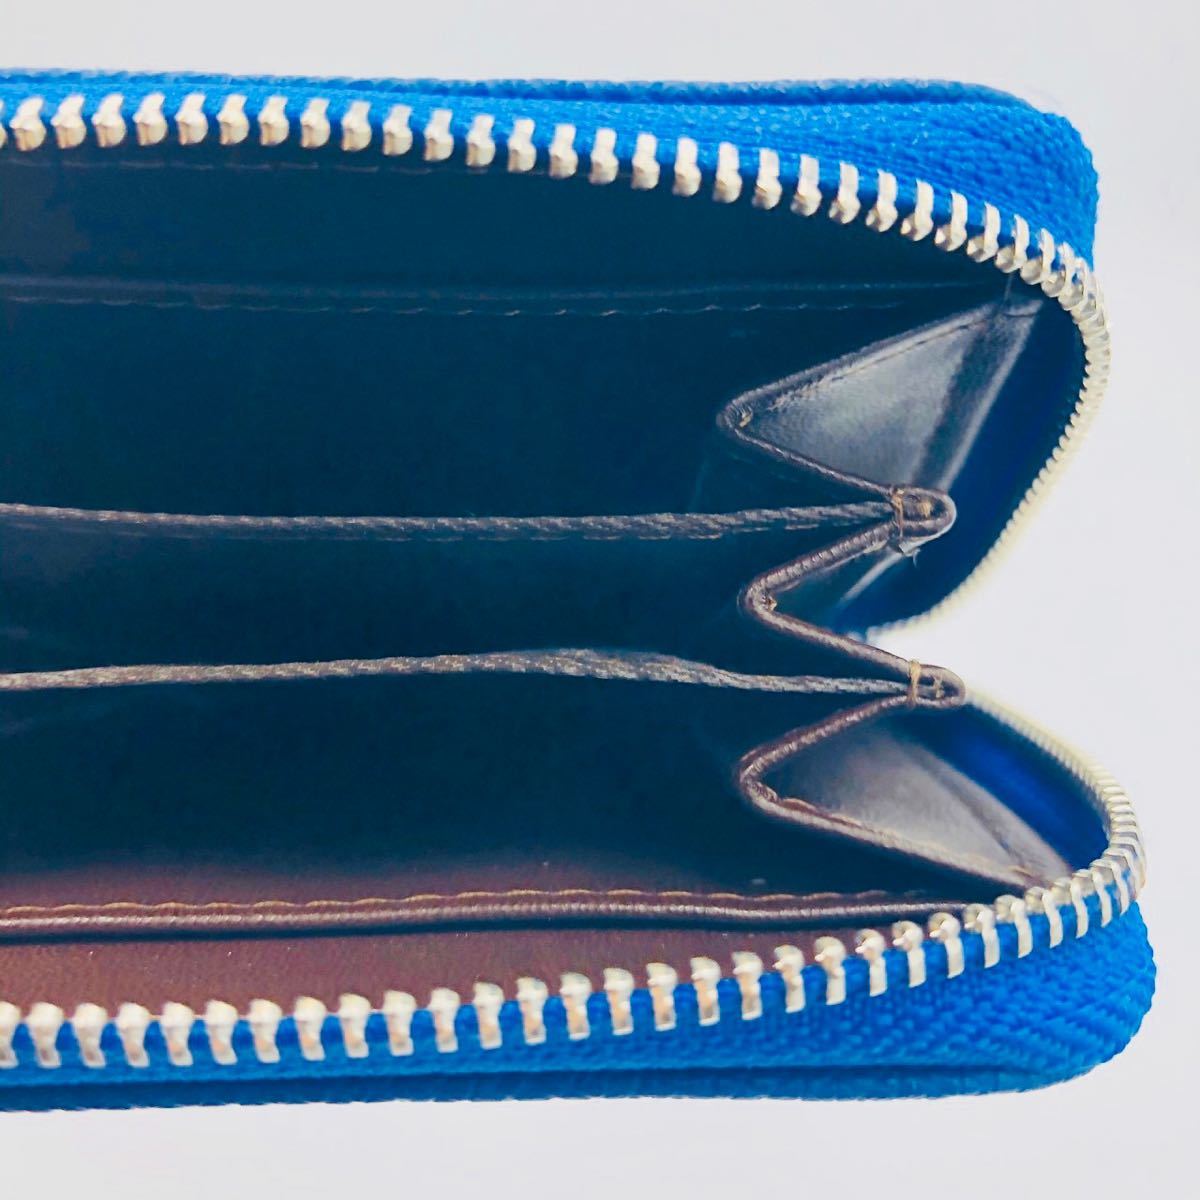 ミニ財布 カードケース ラウンドファスナー コインケース カード収納 ブルー  小銭入れ コンパクト財布 大容量